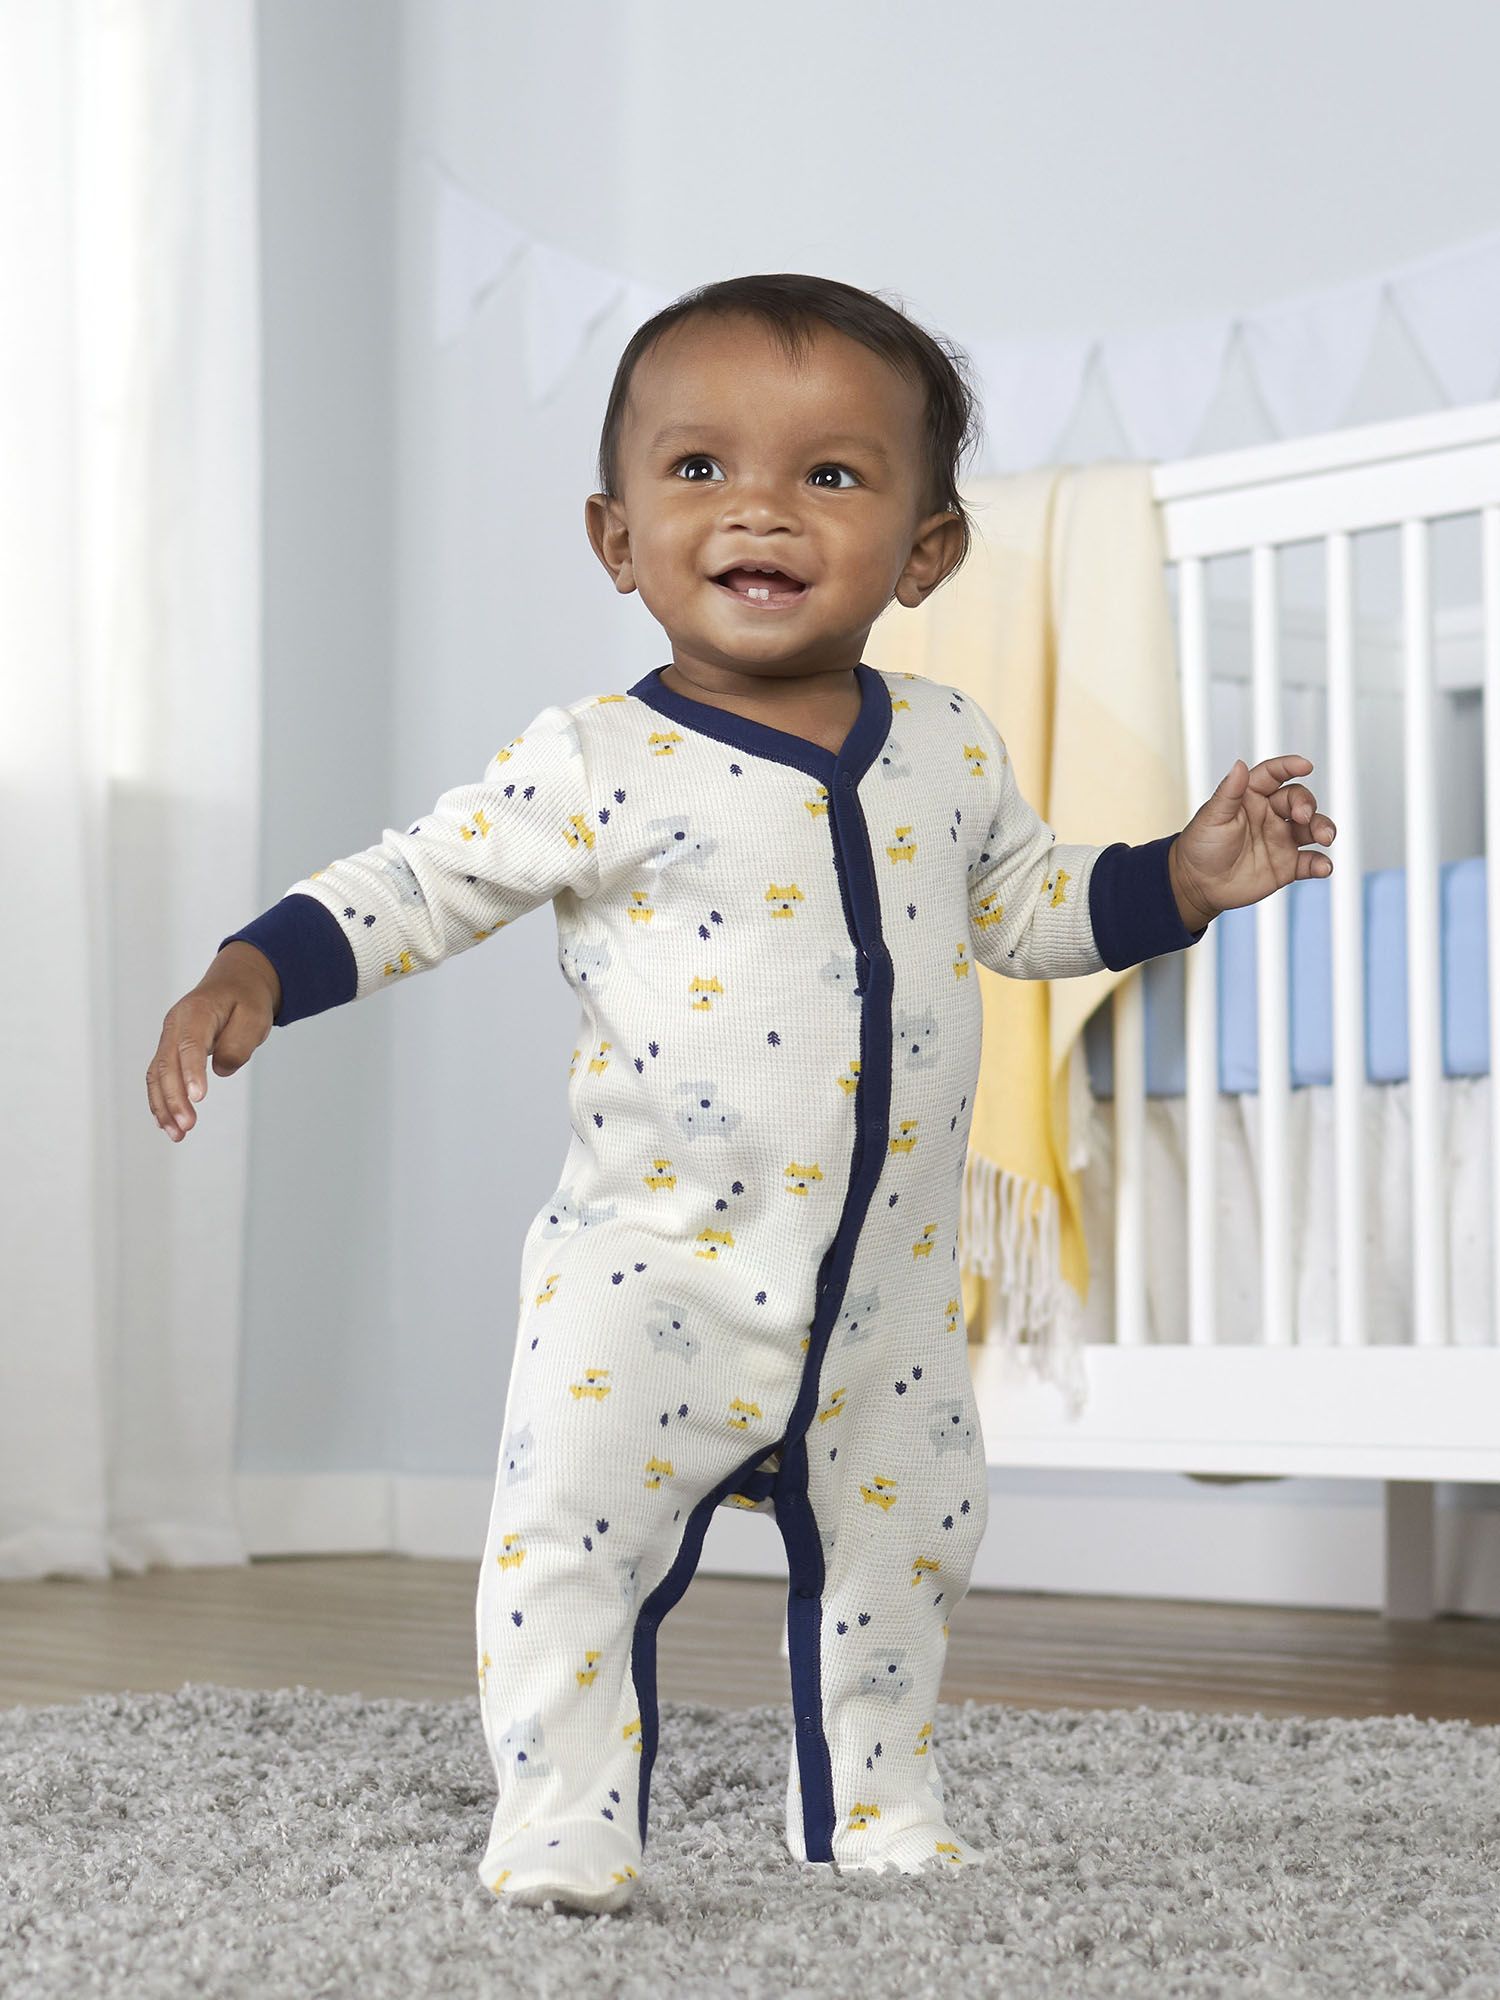 Gerber Baby Boy Thermal Footed Sleep 'N Play Pajamas, 2-Pack - image 4 of 11